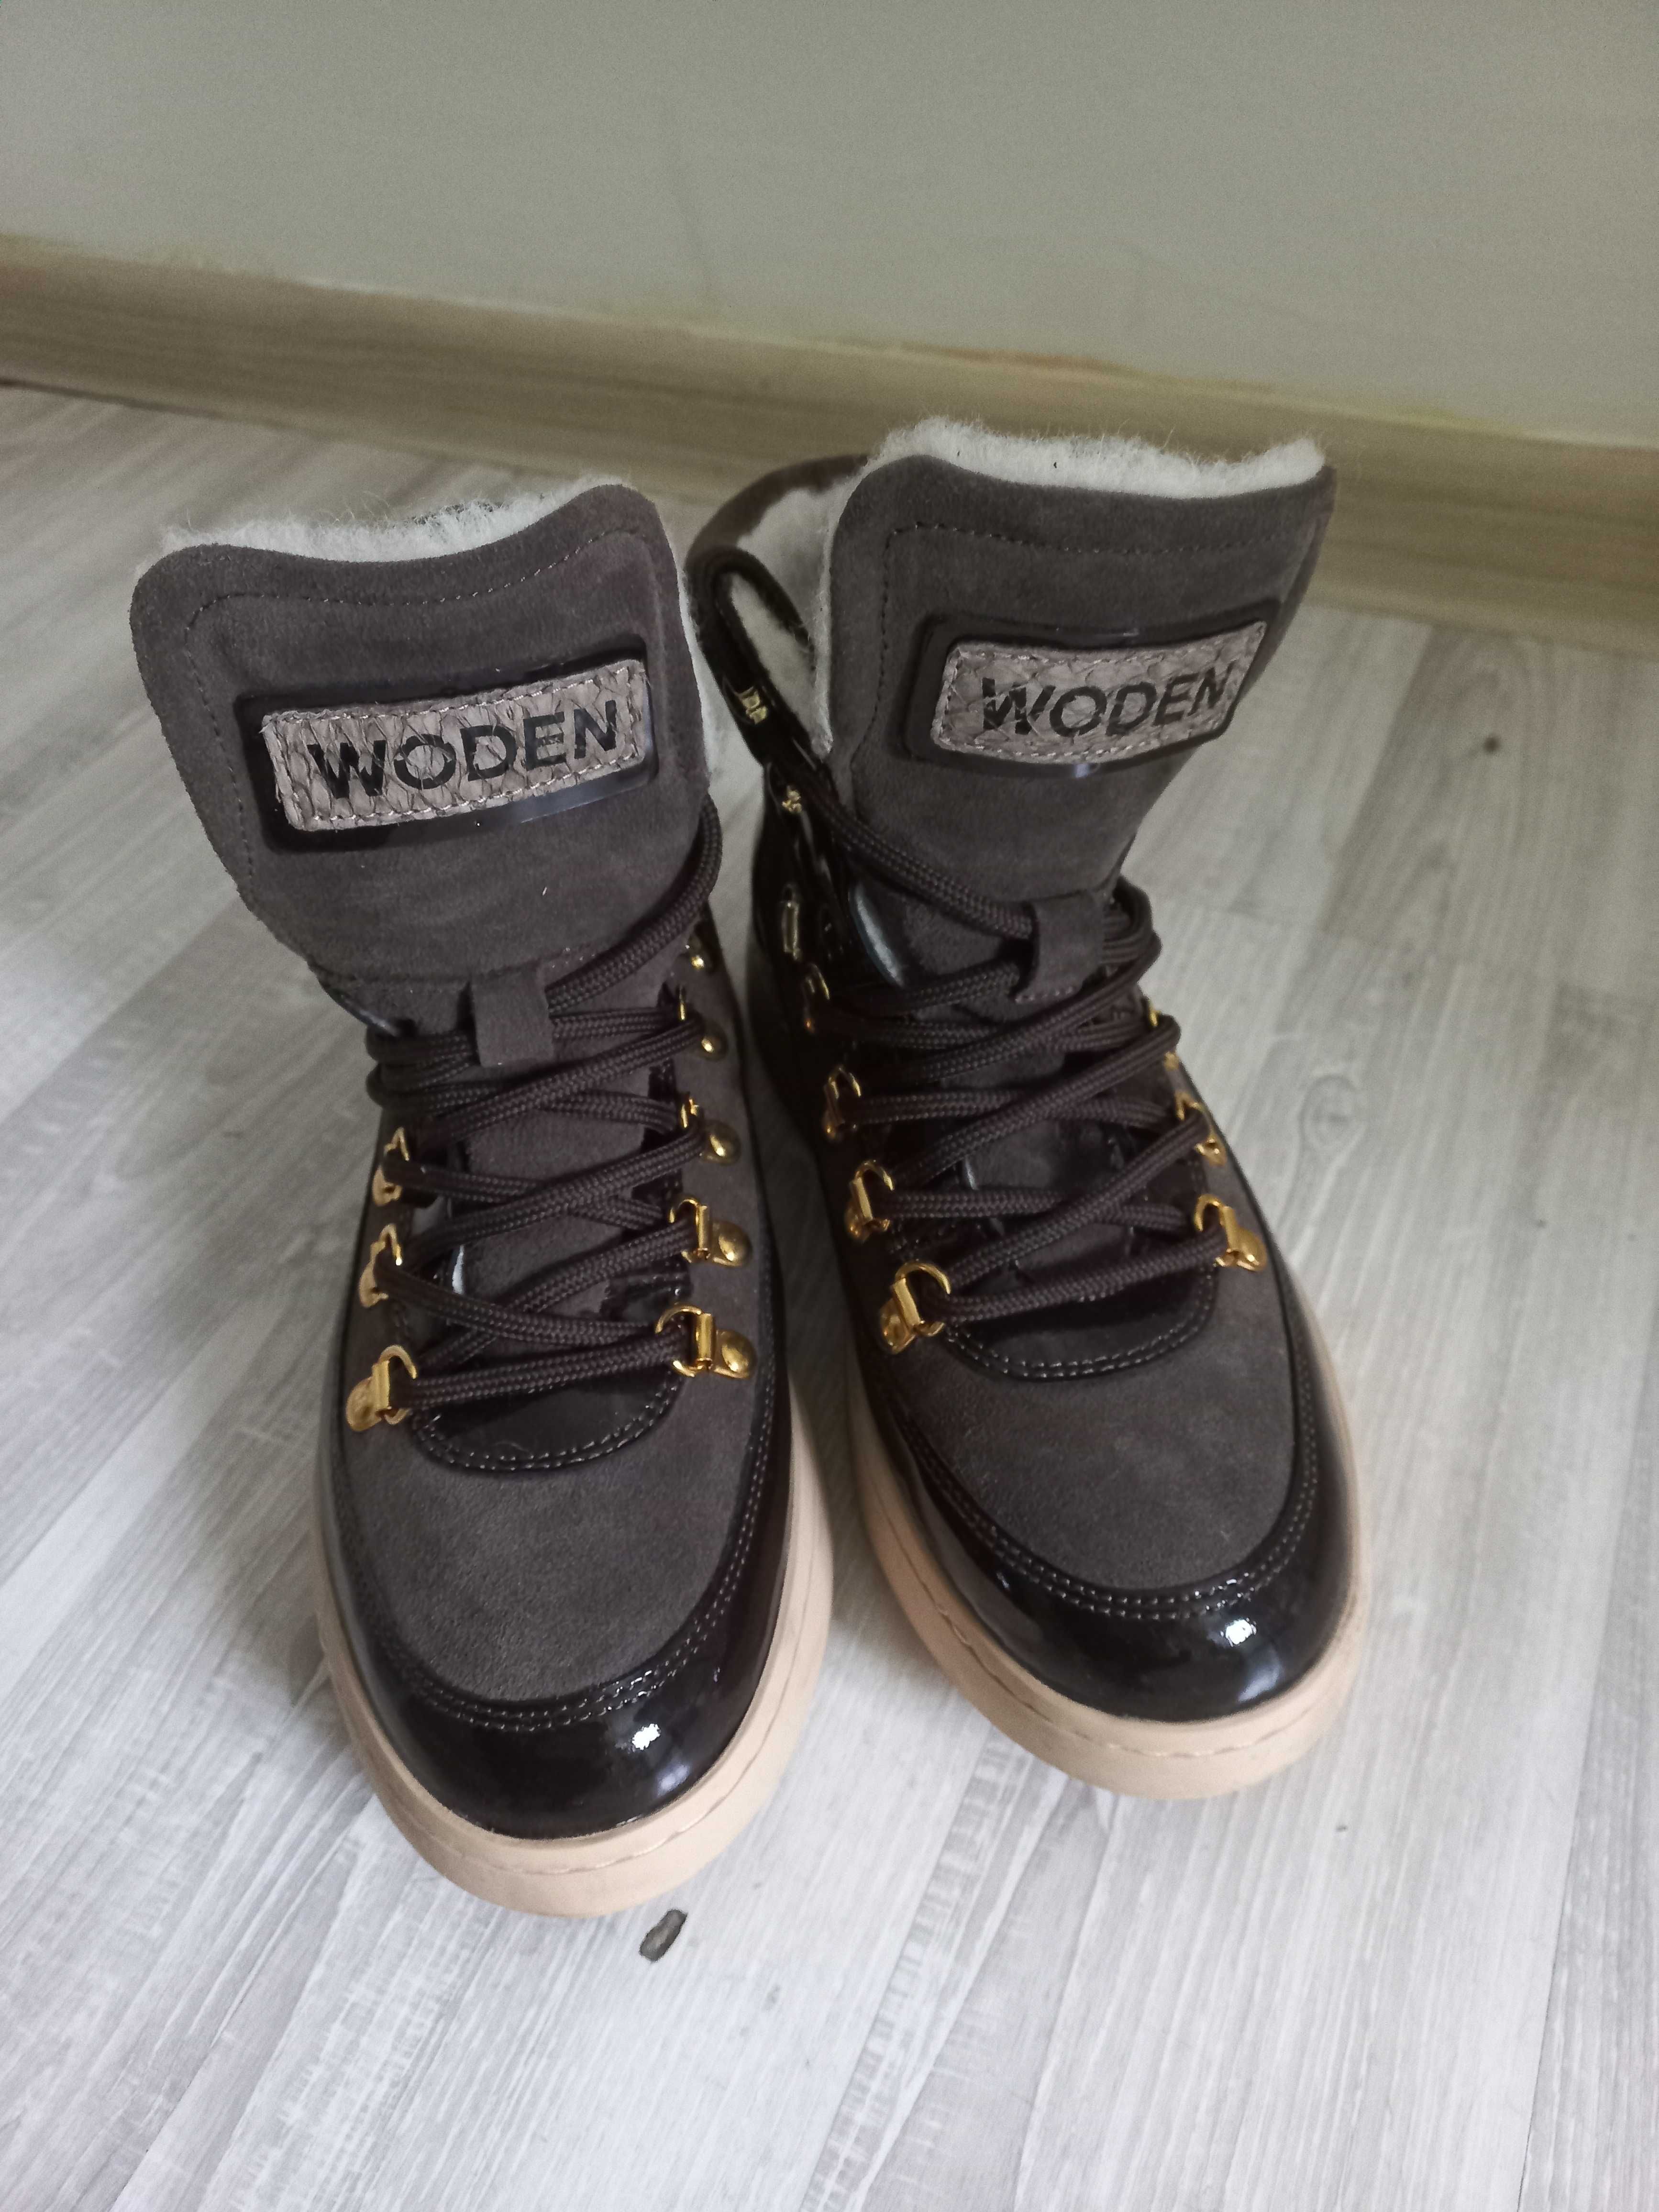 Pantofi ghete de iarna imblanite woden 37